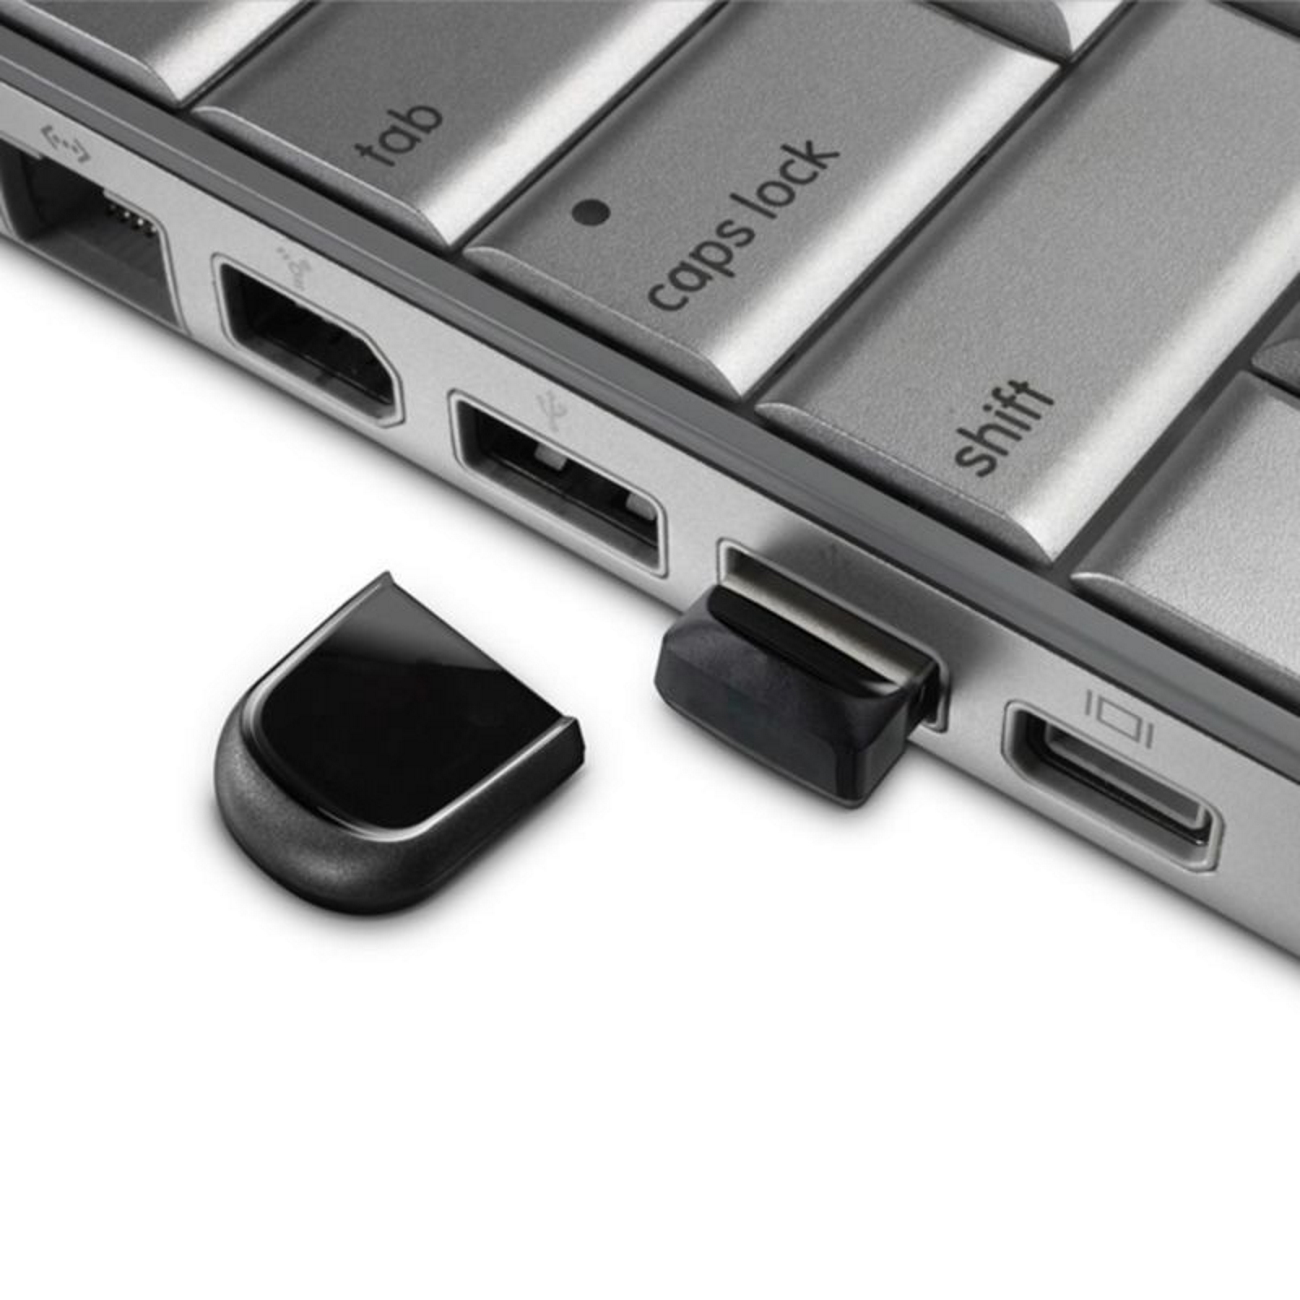 USB GERMANY 32 Mini USB-Stick K1 (Schwarz, GB) ®ULTRA